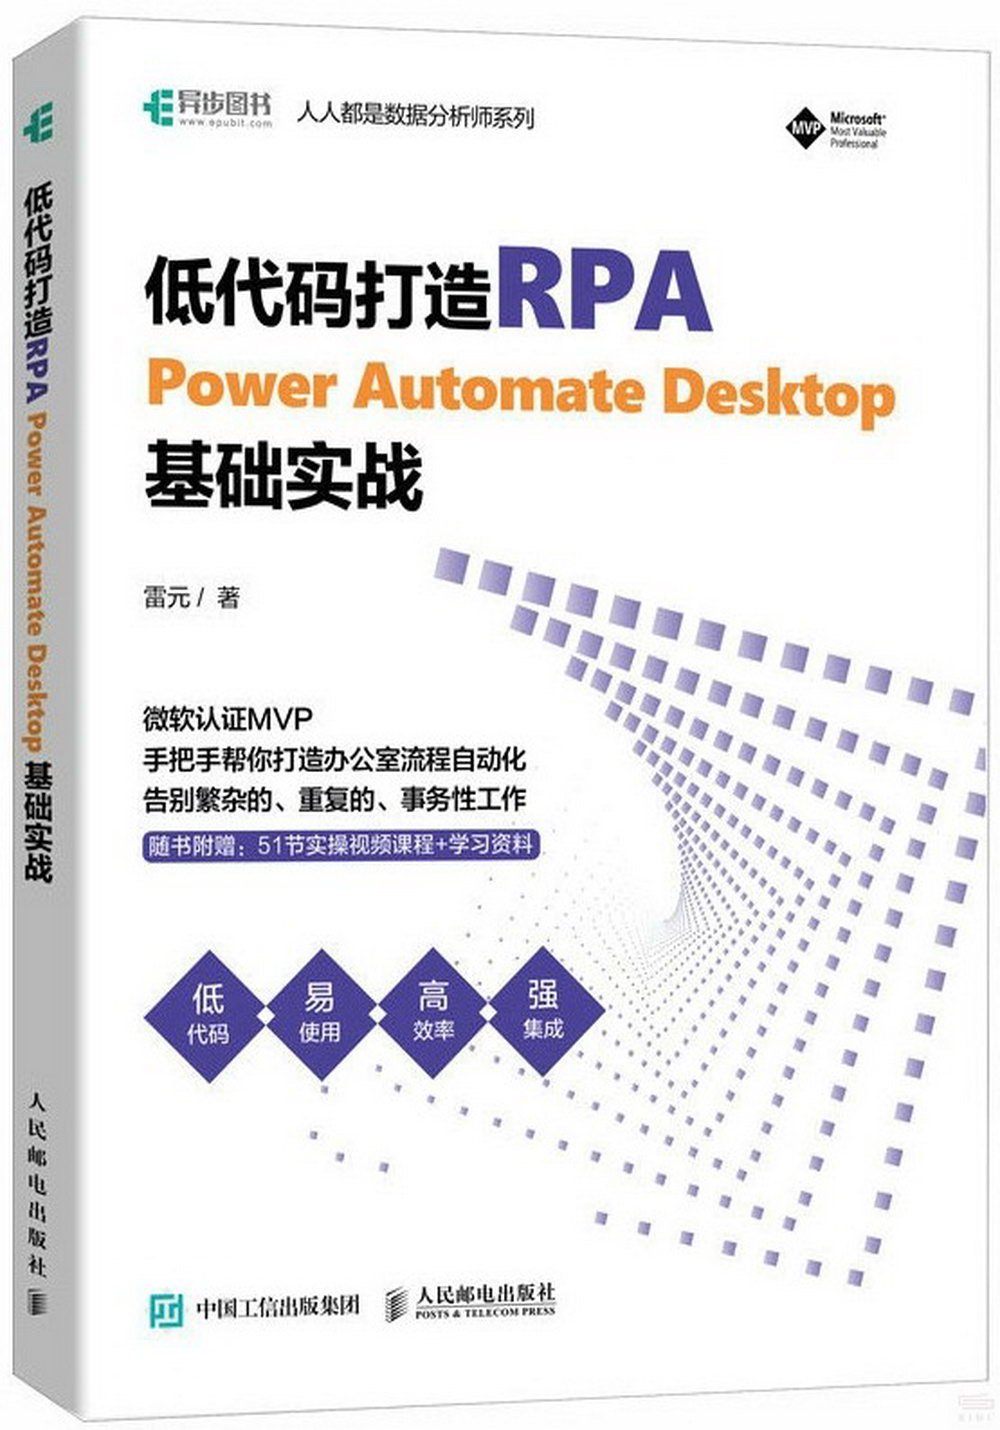 低代碼打造RPA:Power Automate Desktop基礎實戰